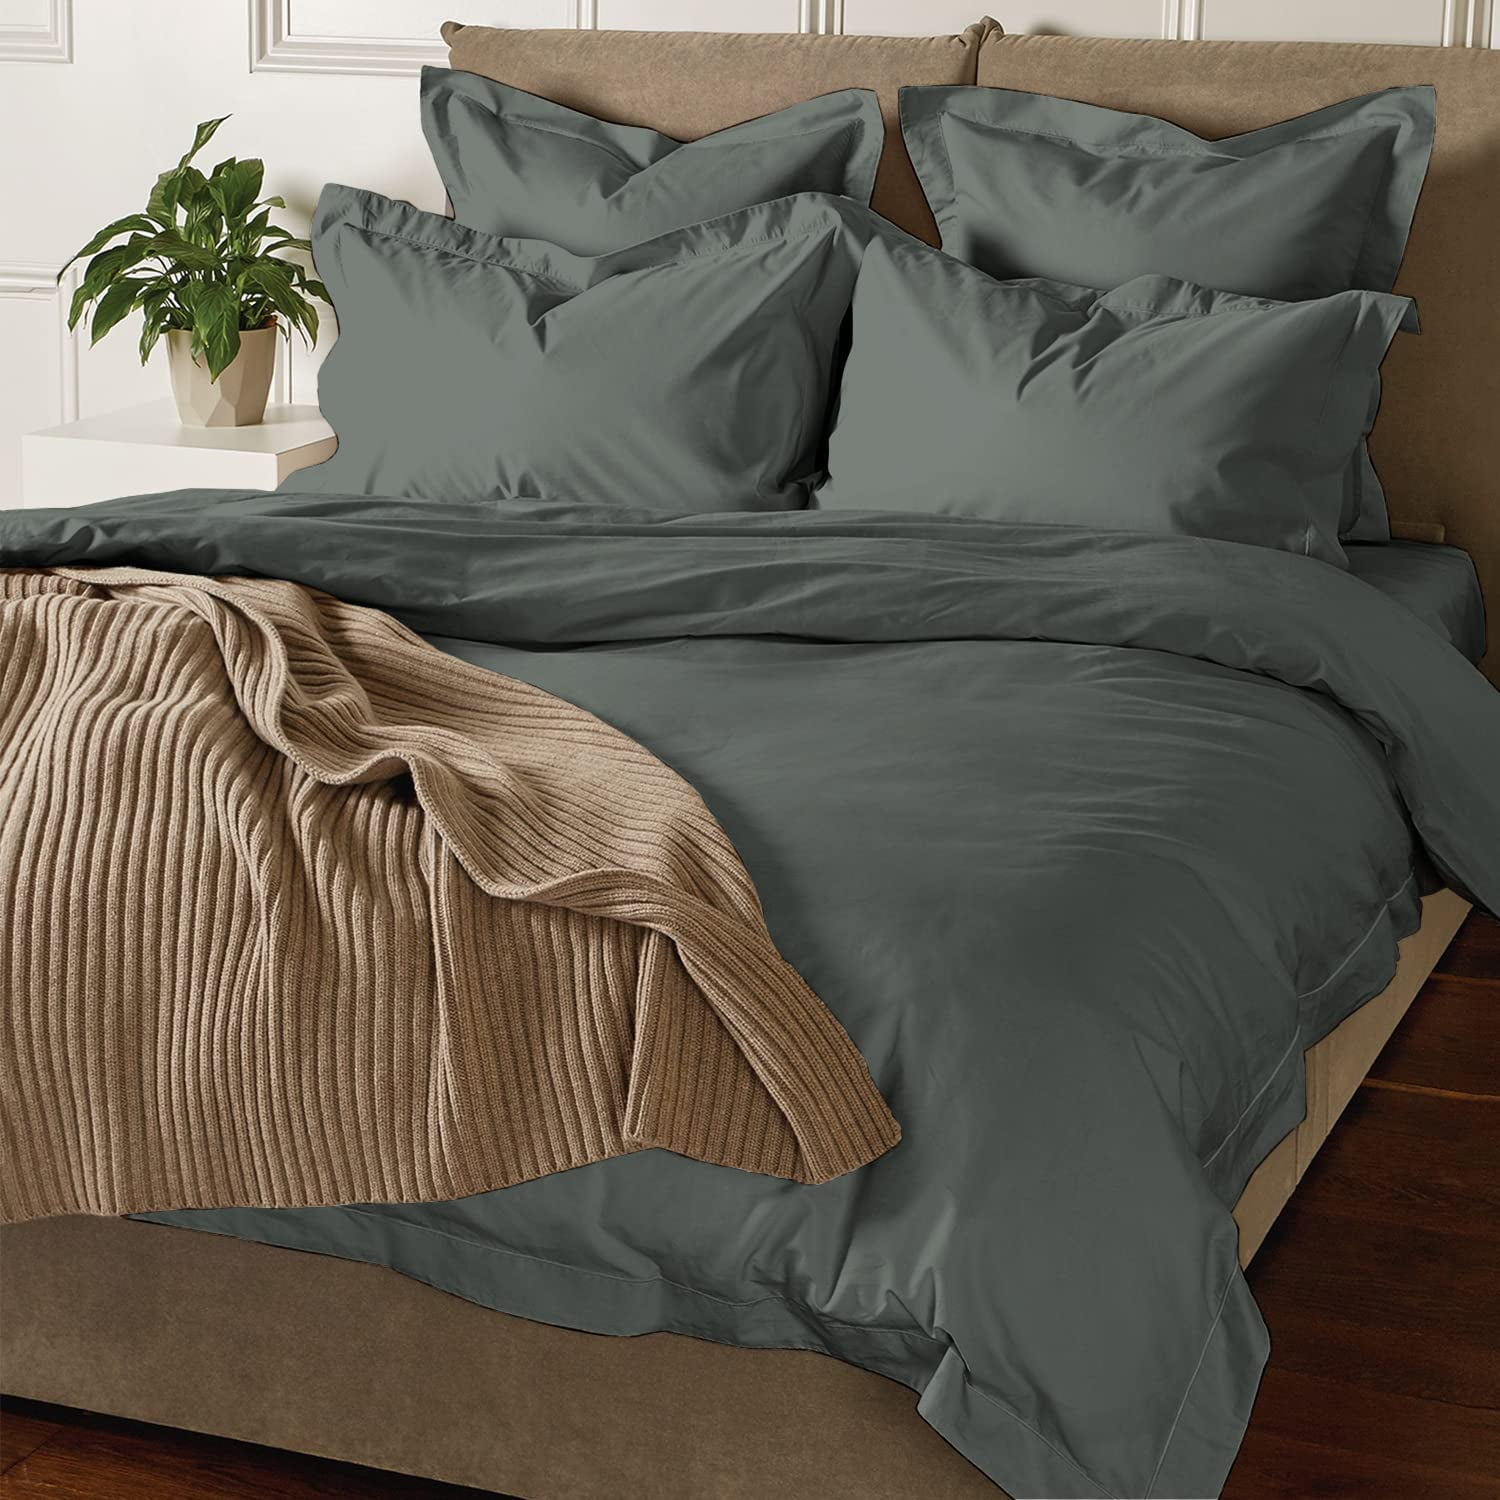 Dark Grey Stripe Bedding Item 100% Cotton Soft & Smooth 800 Thread Count US size 